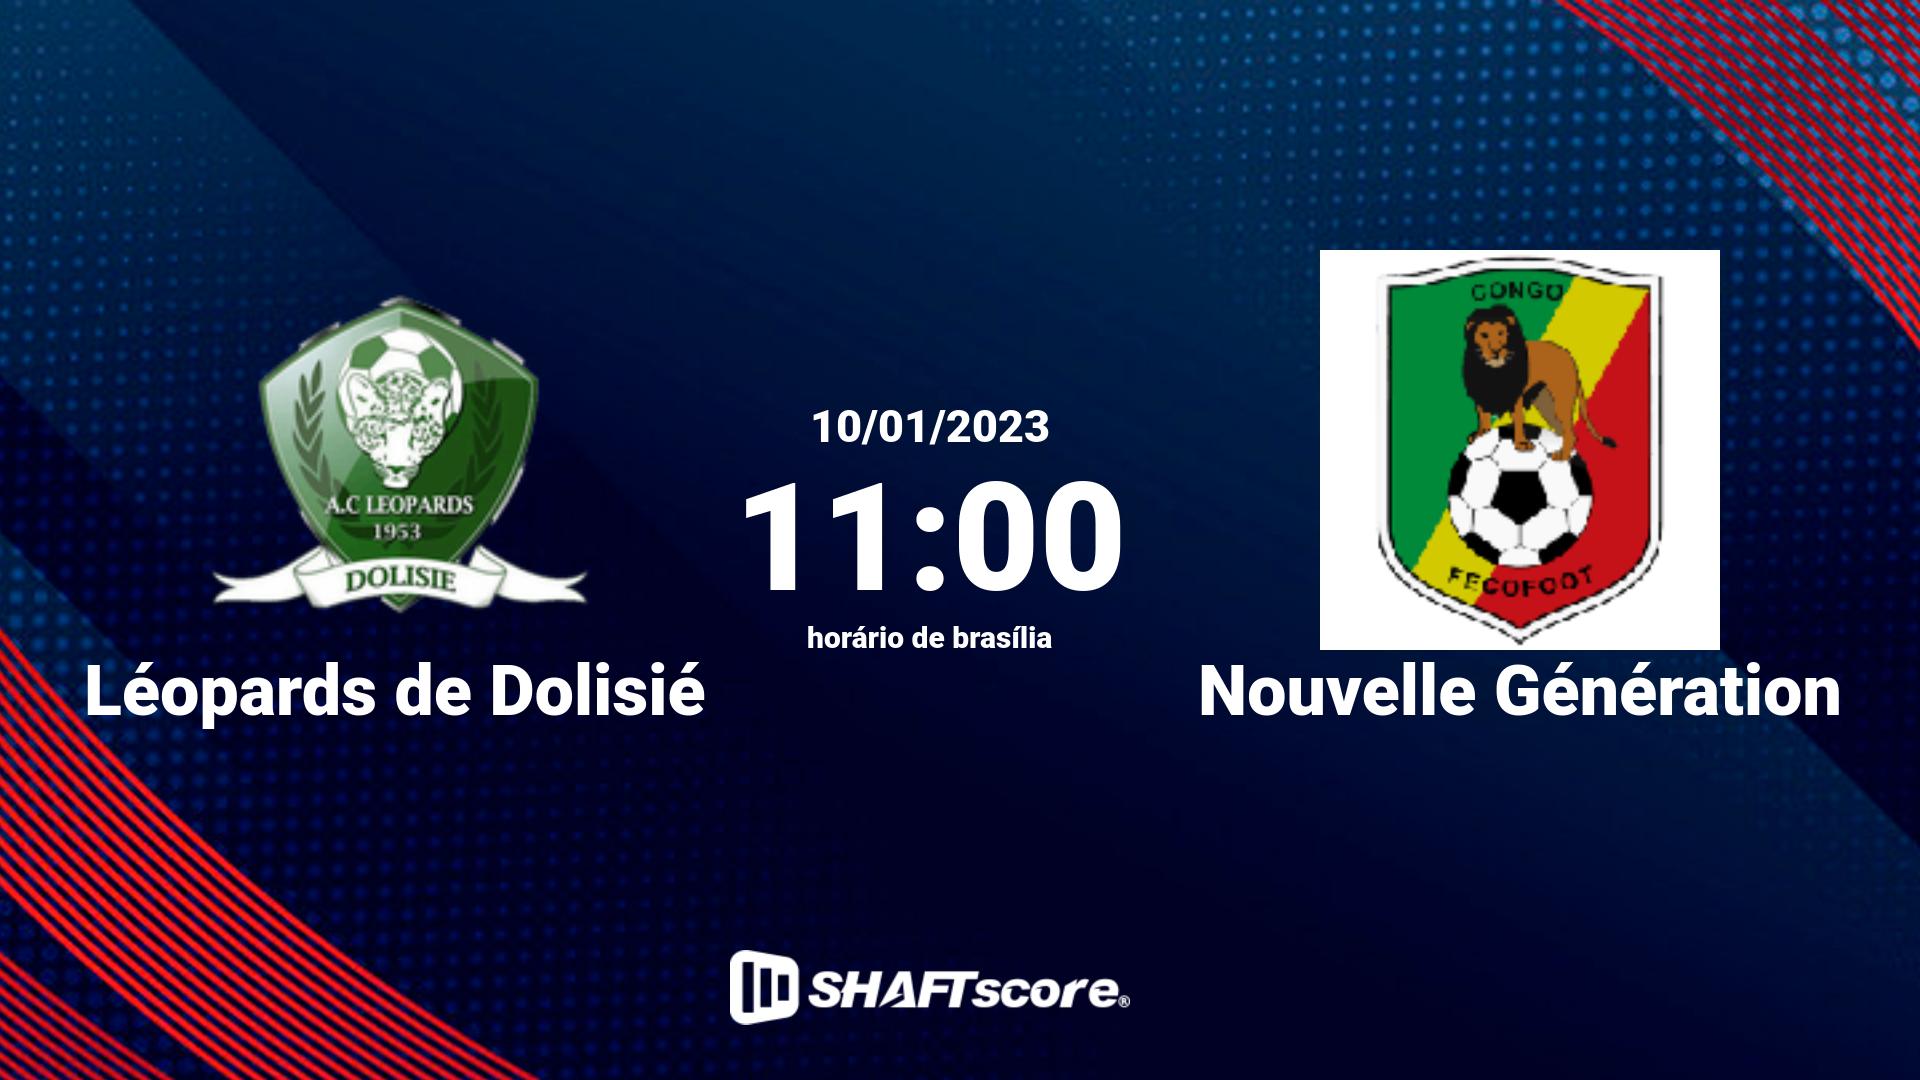 Estatísticas do jogo Léopards de Dolisié vs Nouvelle Génération 10.01 11:00